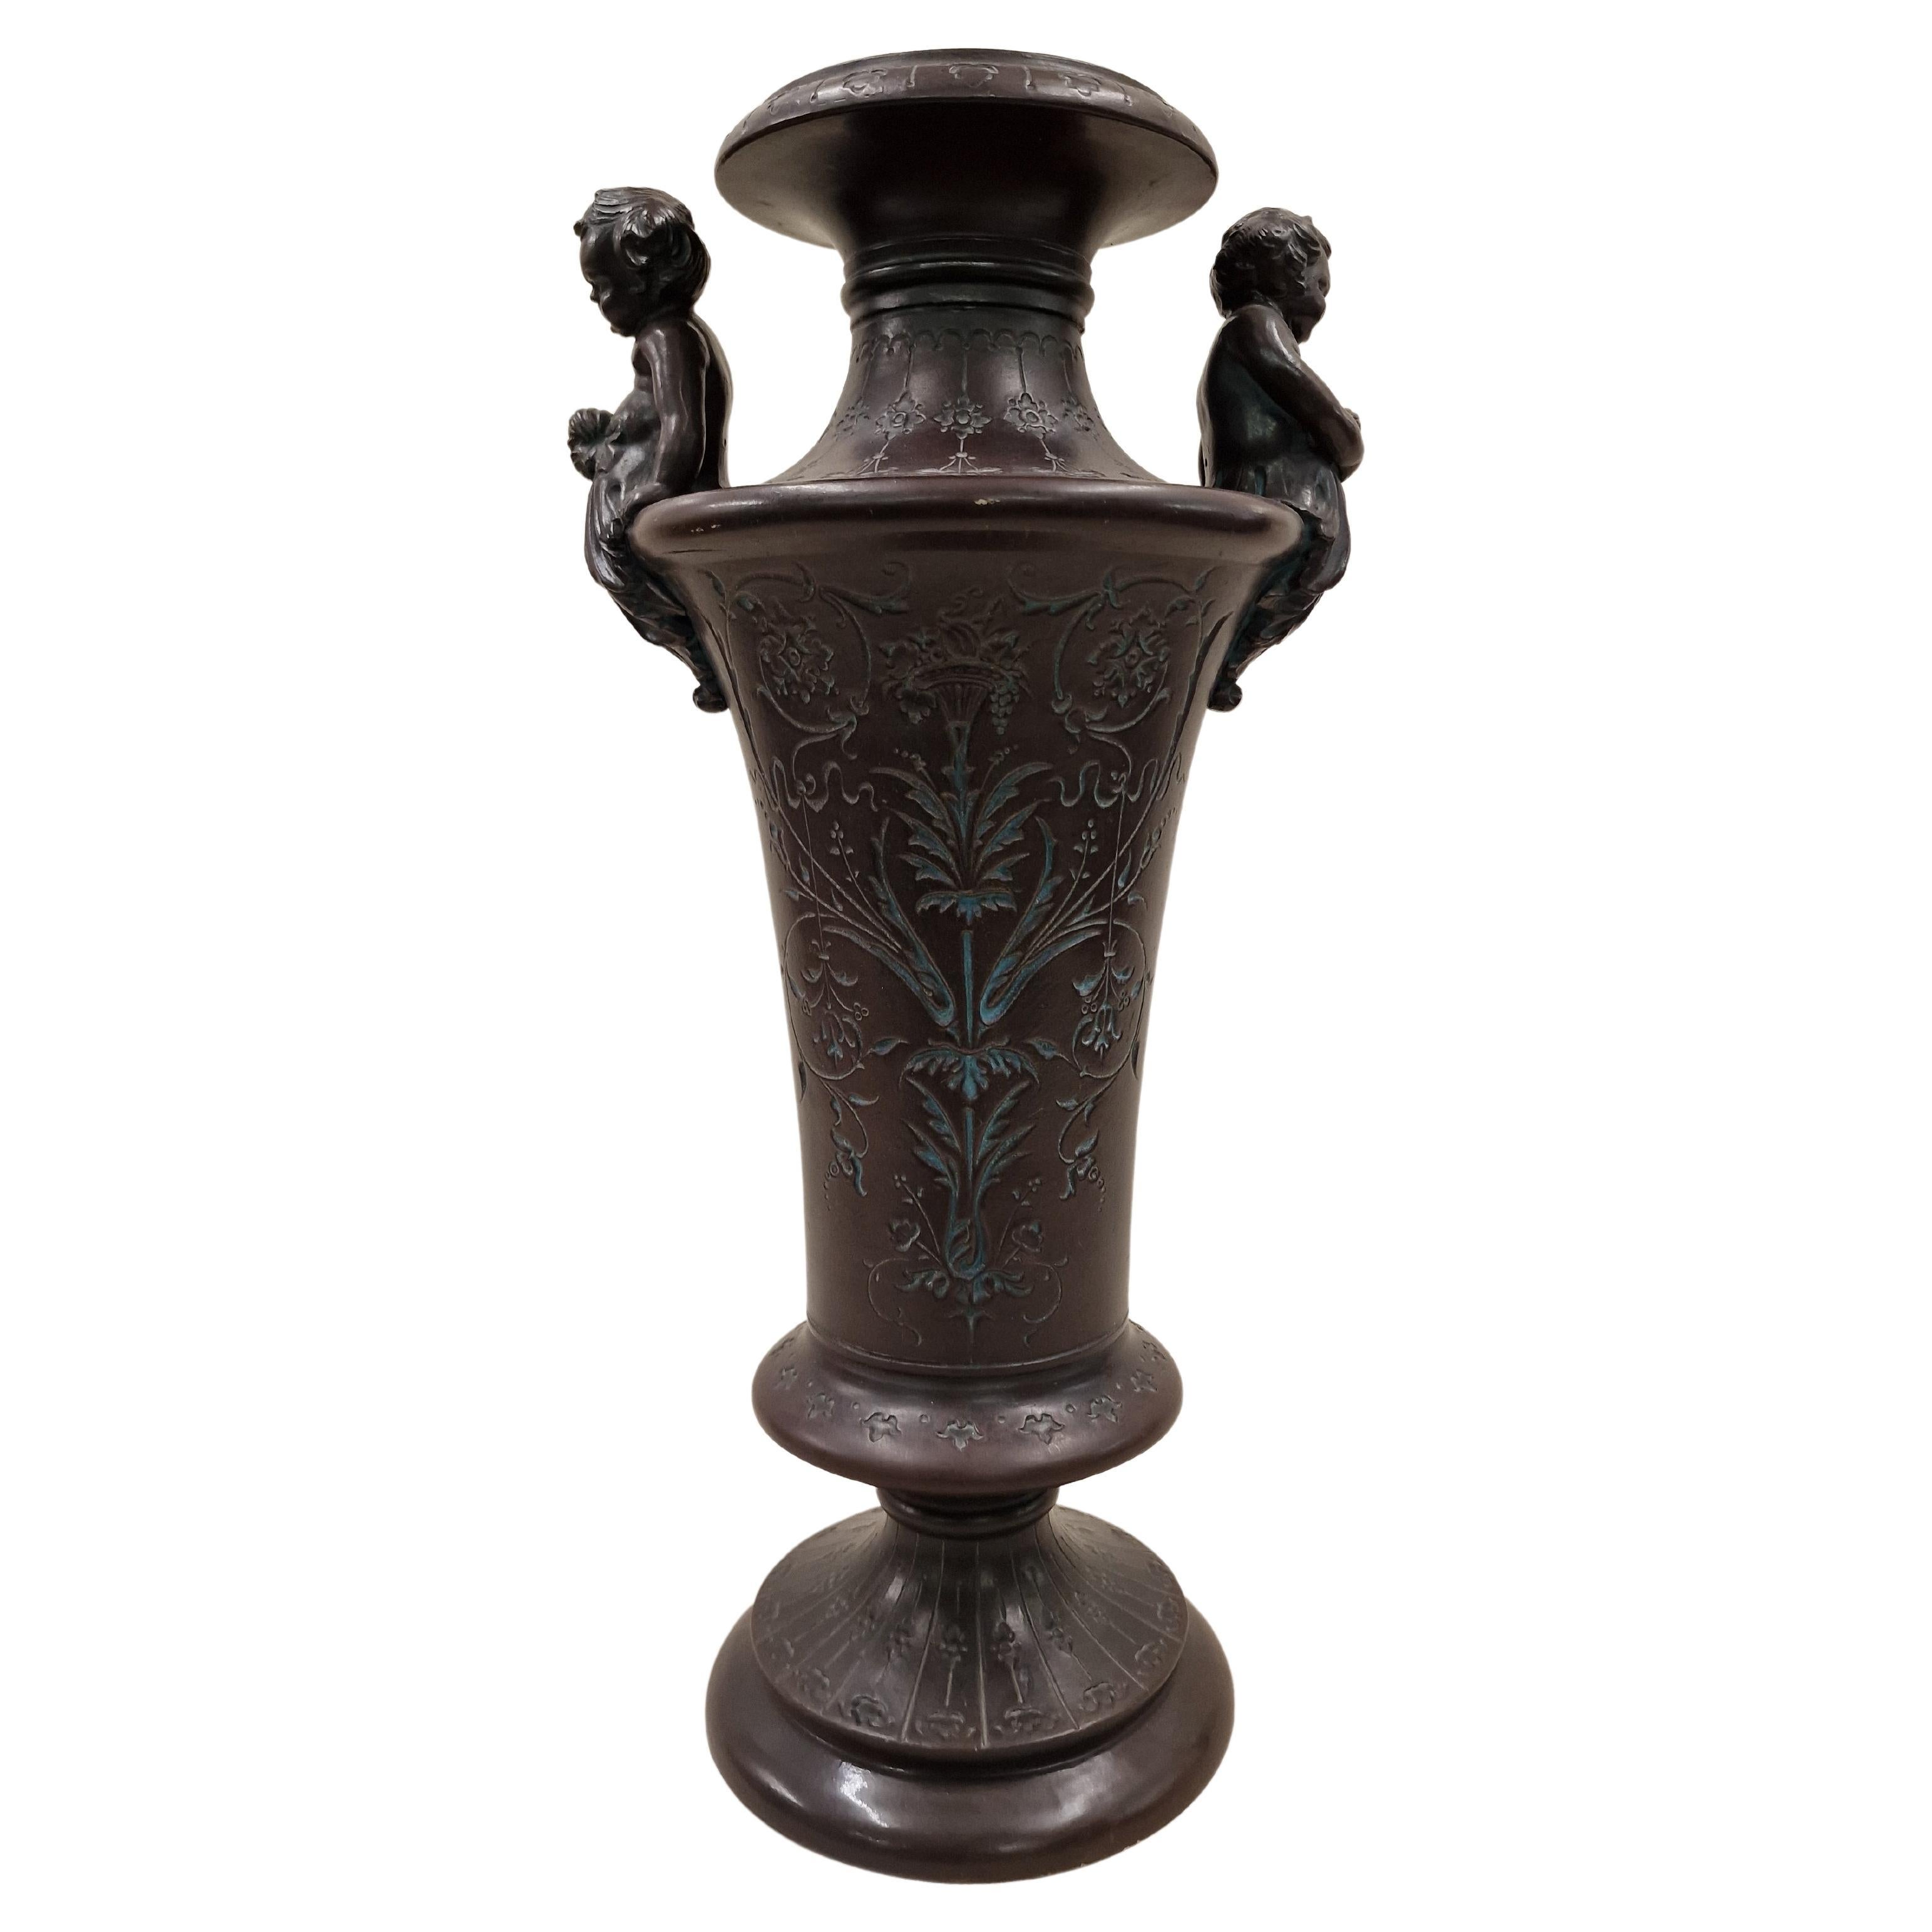 Grande amphore, vase, céramique/majolique, Bernhard Bloch, 1890, historicisme, Bohème